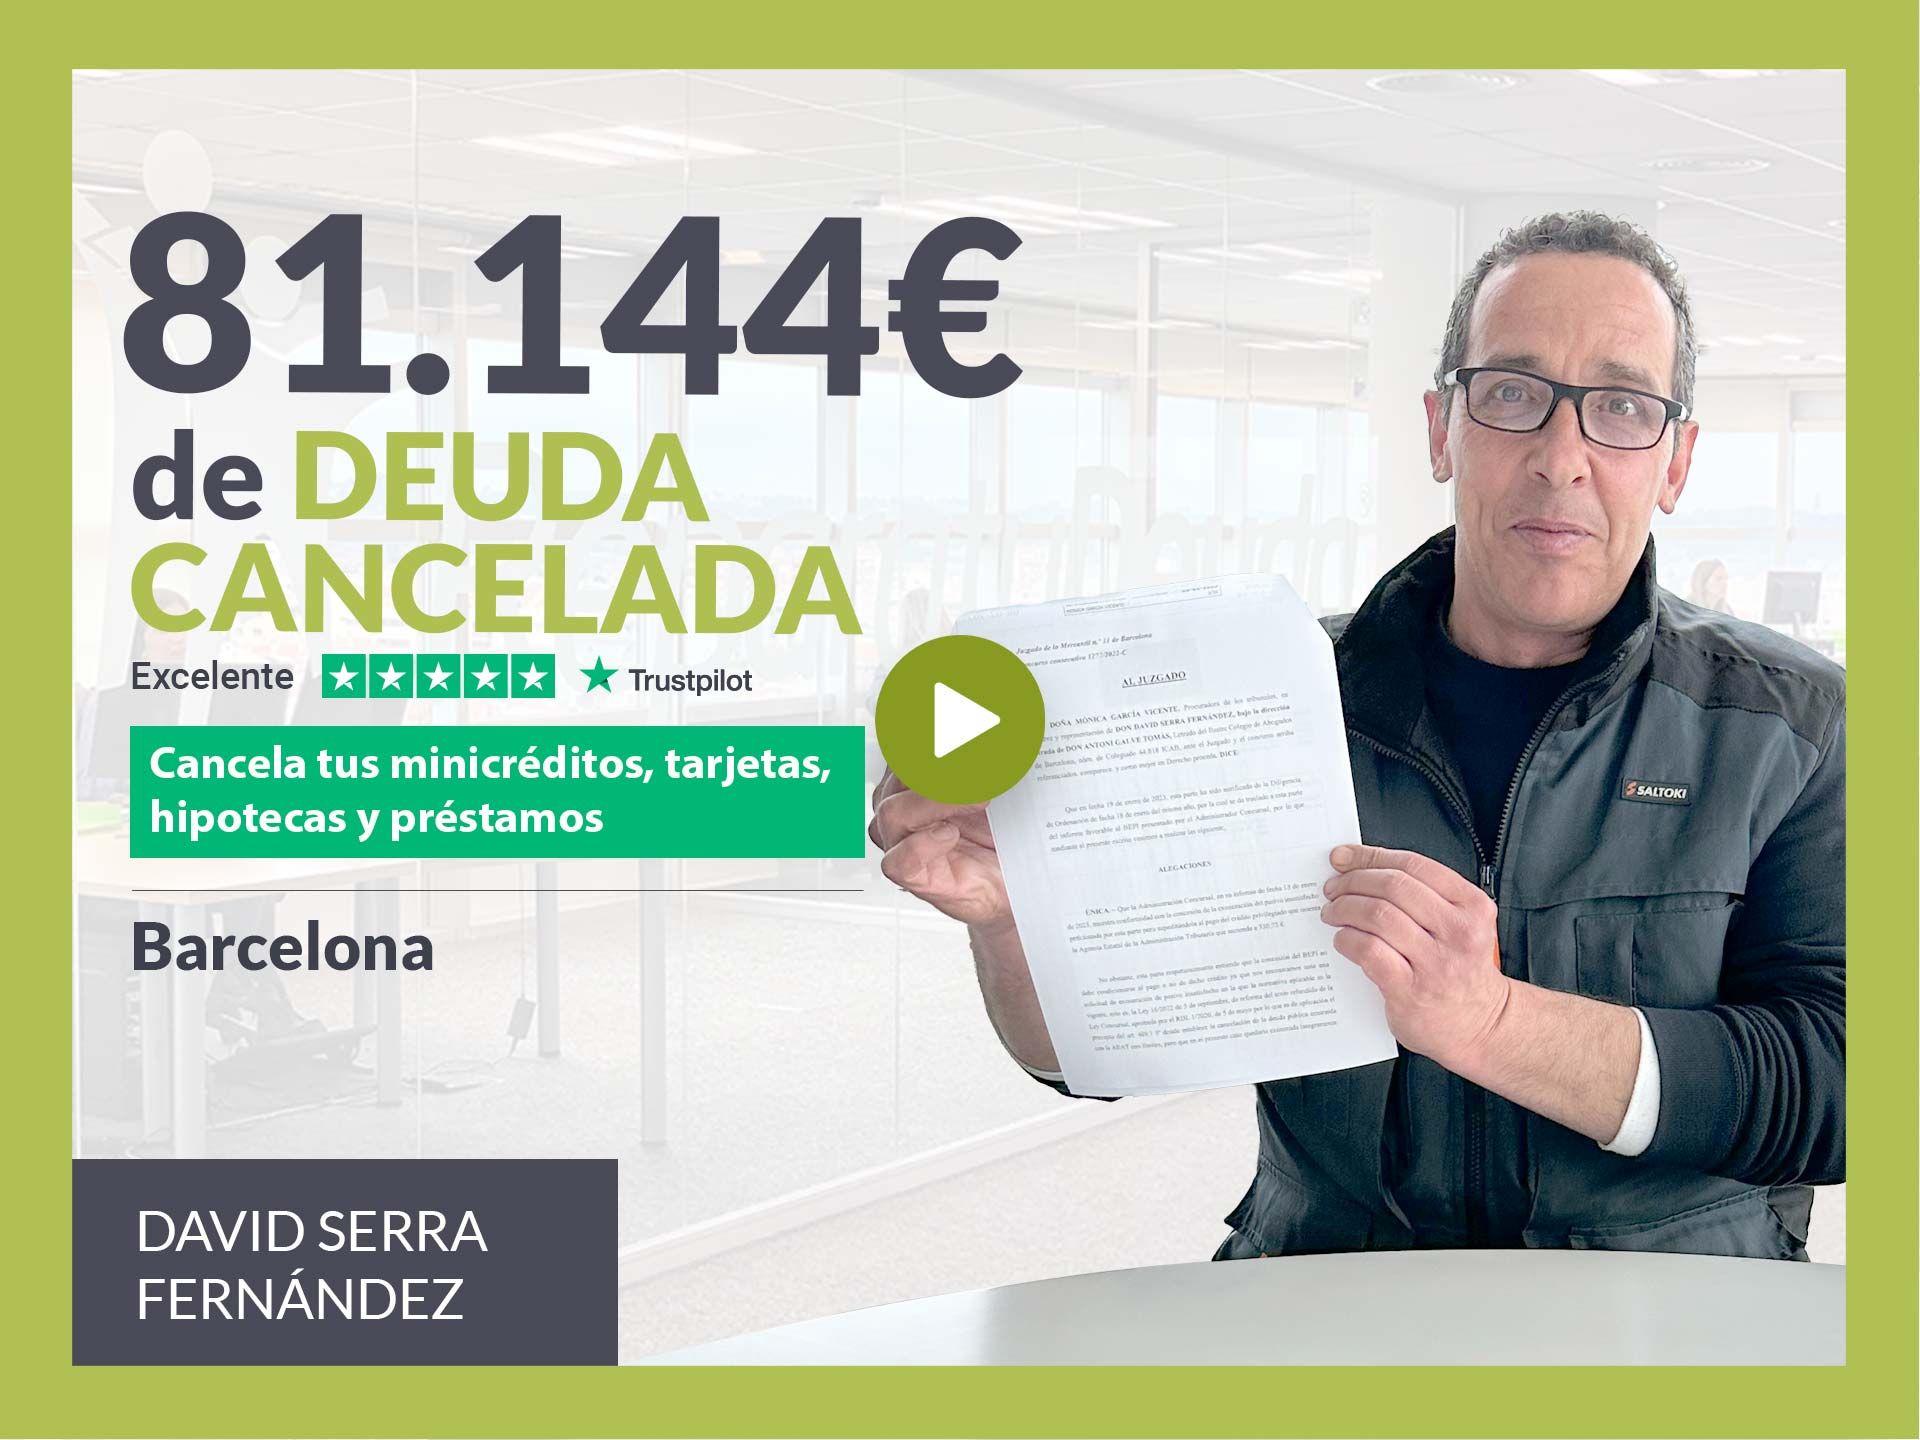 Repara tu Deuda Abogados cancela 81.144? en Barcelona (Catalunya) con la Ley de Segunda Oportunidad